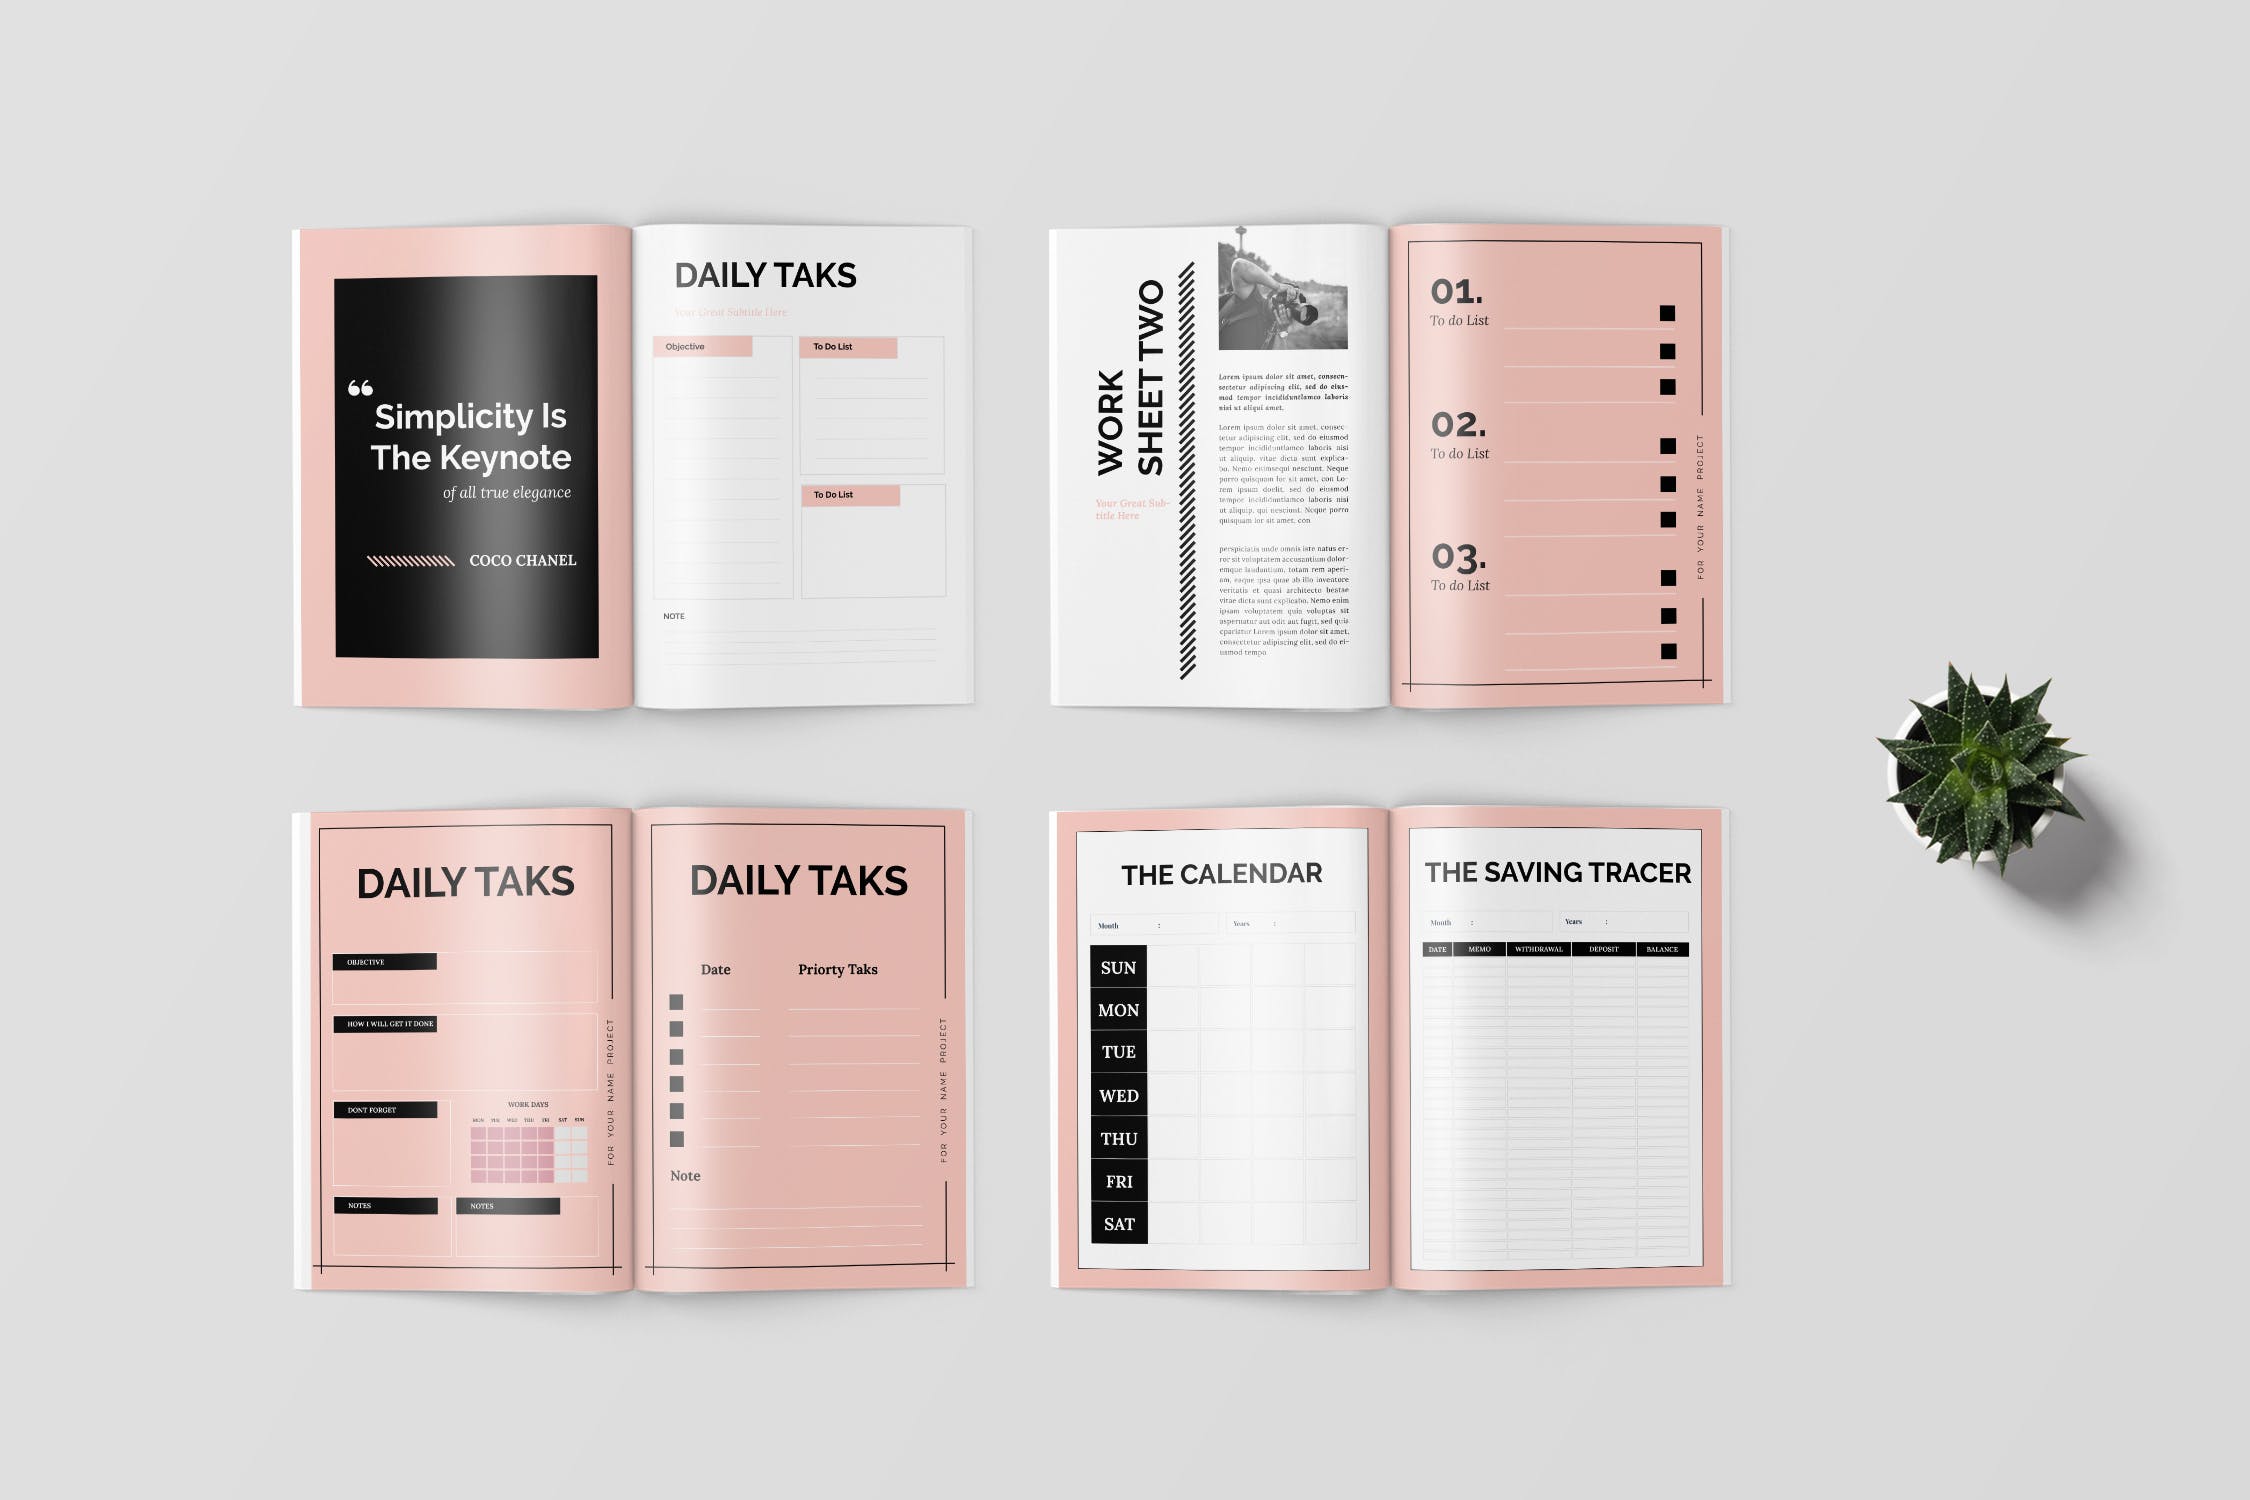 极简主义Workbook创意设计模板v2 Stardraw – Minimalist Workbook Template插图(3)